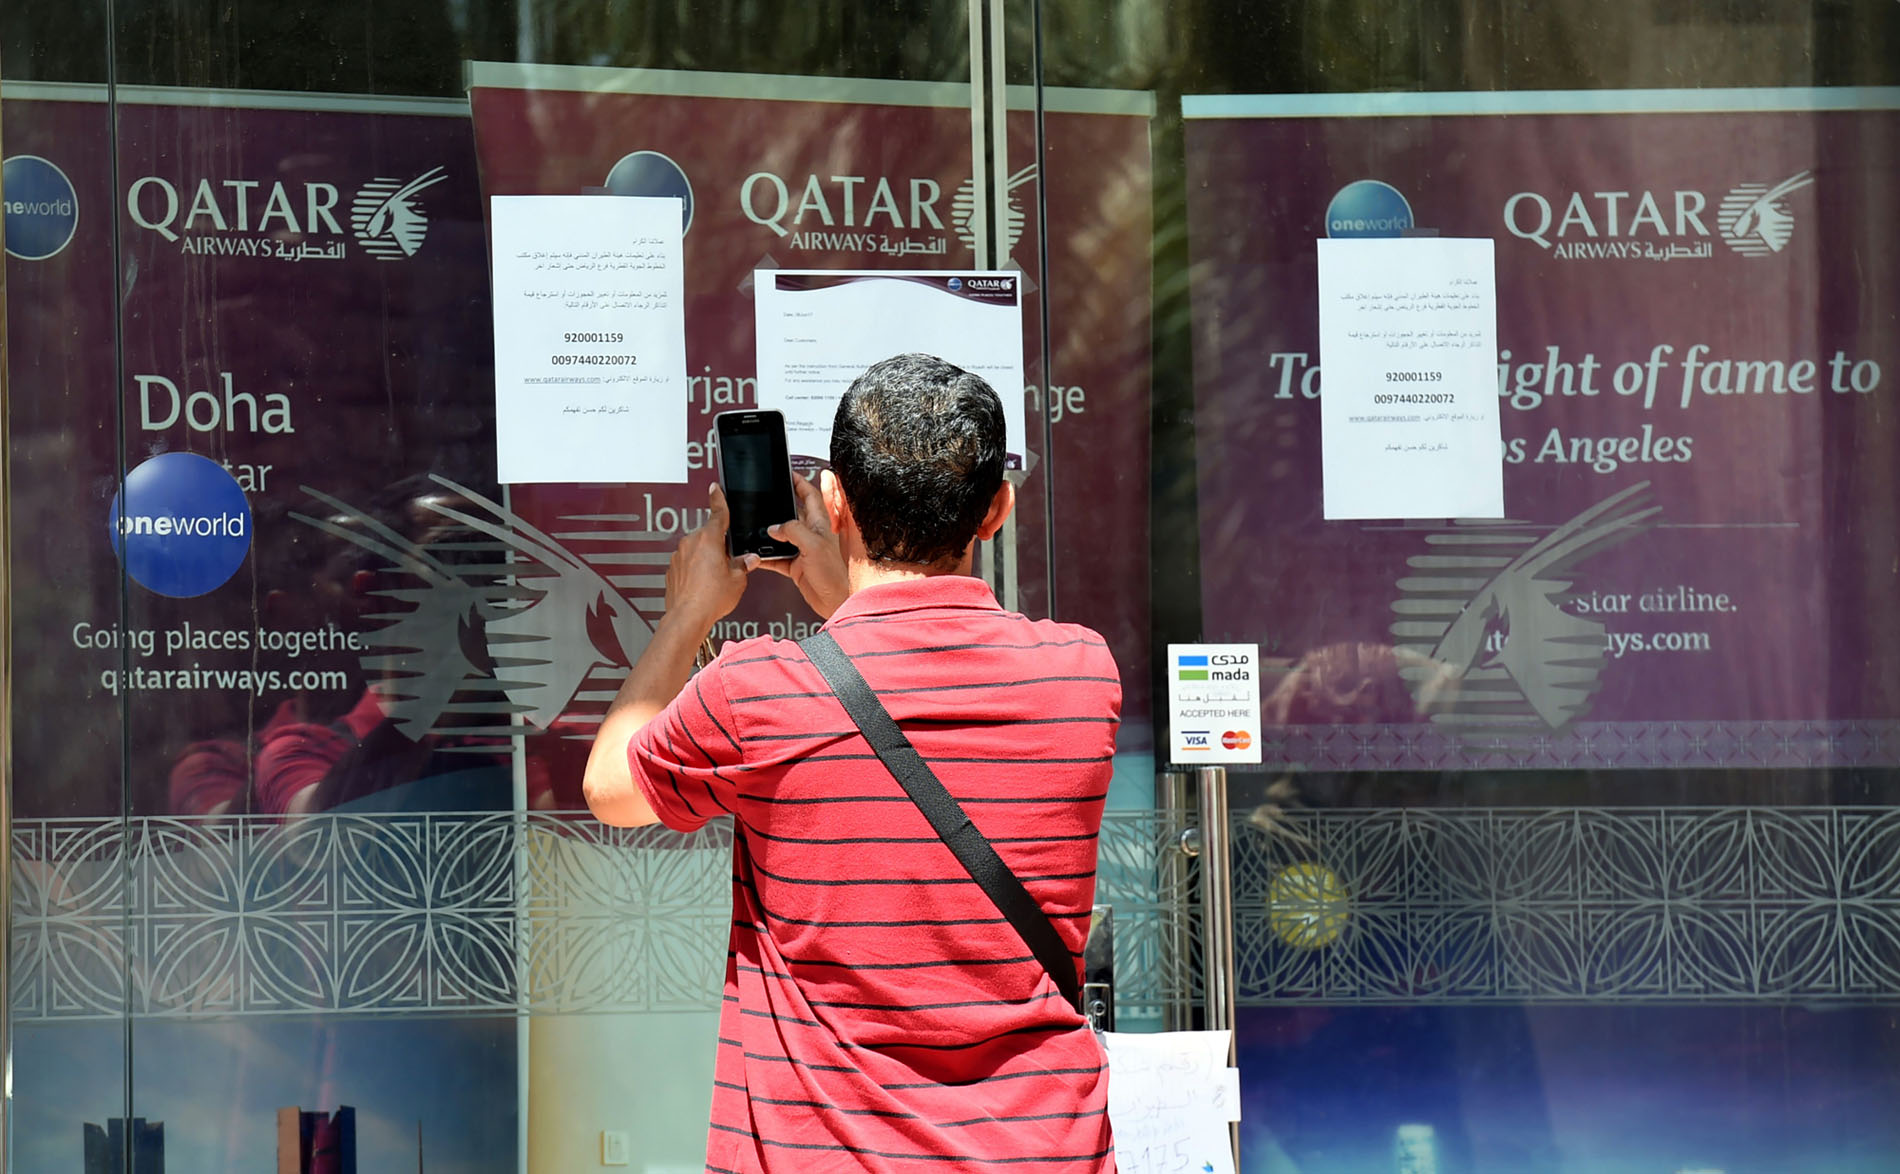 Một người đứng chụp ảnh bảng thông báo trước văn phòng hãng Qatar Airways ở Riyadh, Saudi Arabia. Thông báo nói rằng văn phòng này bị đóng cửa theo yêu cầu của Cơ quan hàng không dân dụng Saudi. (Nguồn: AFP)